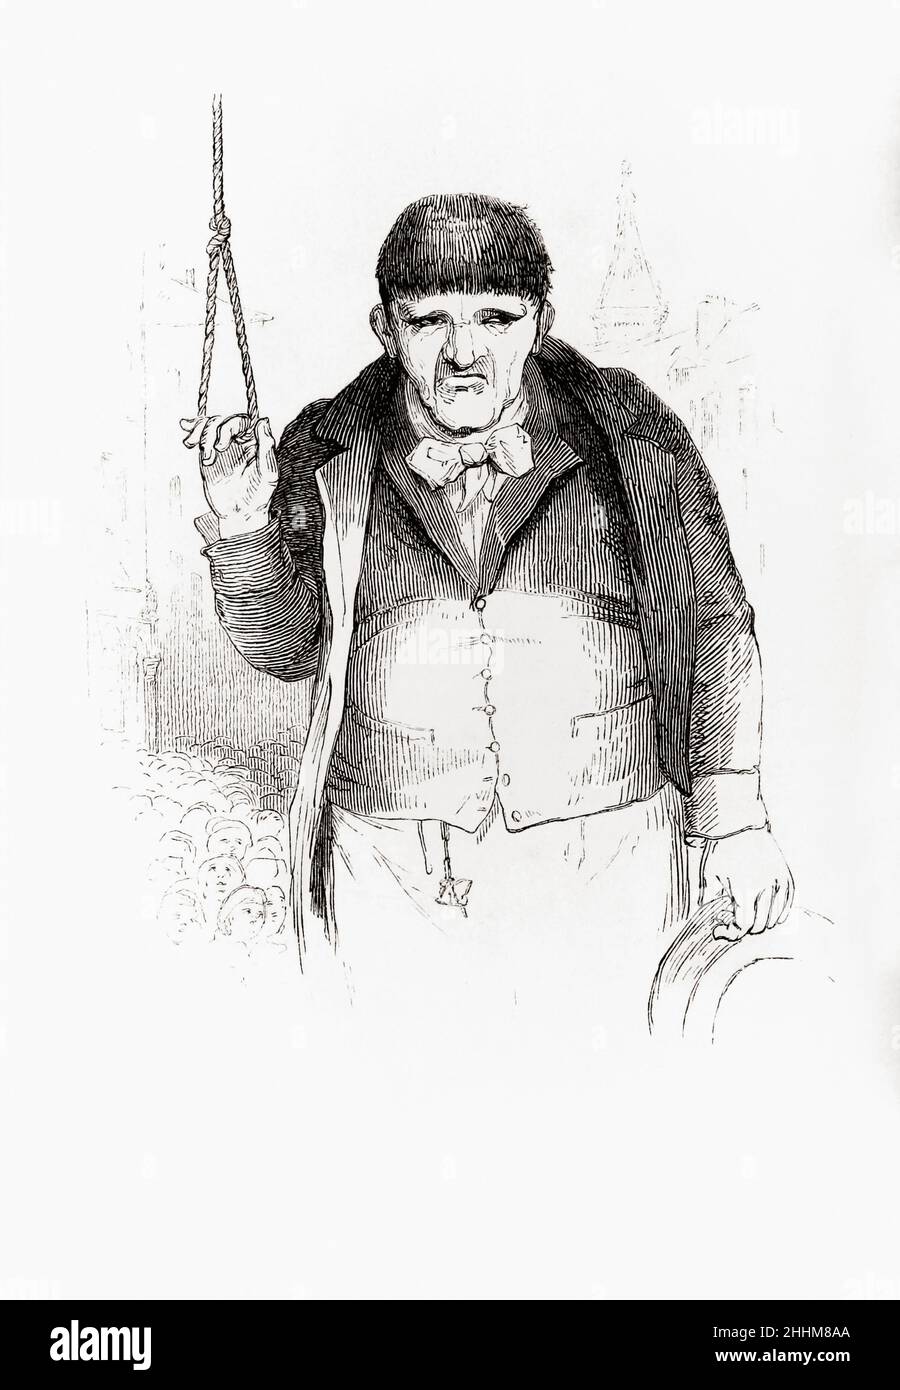 Der Henker. Scharfrichter. Nach einer Illustration aus dem 19th. Jahrhundert. Stockfoto